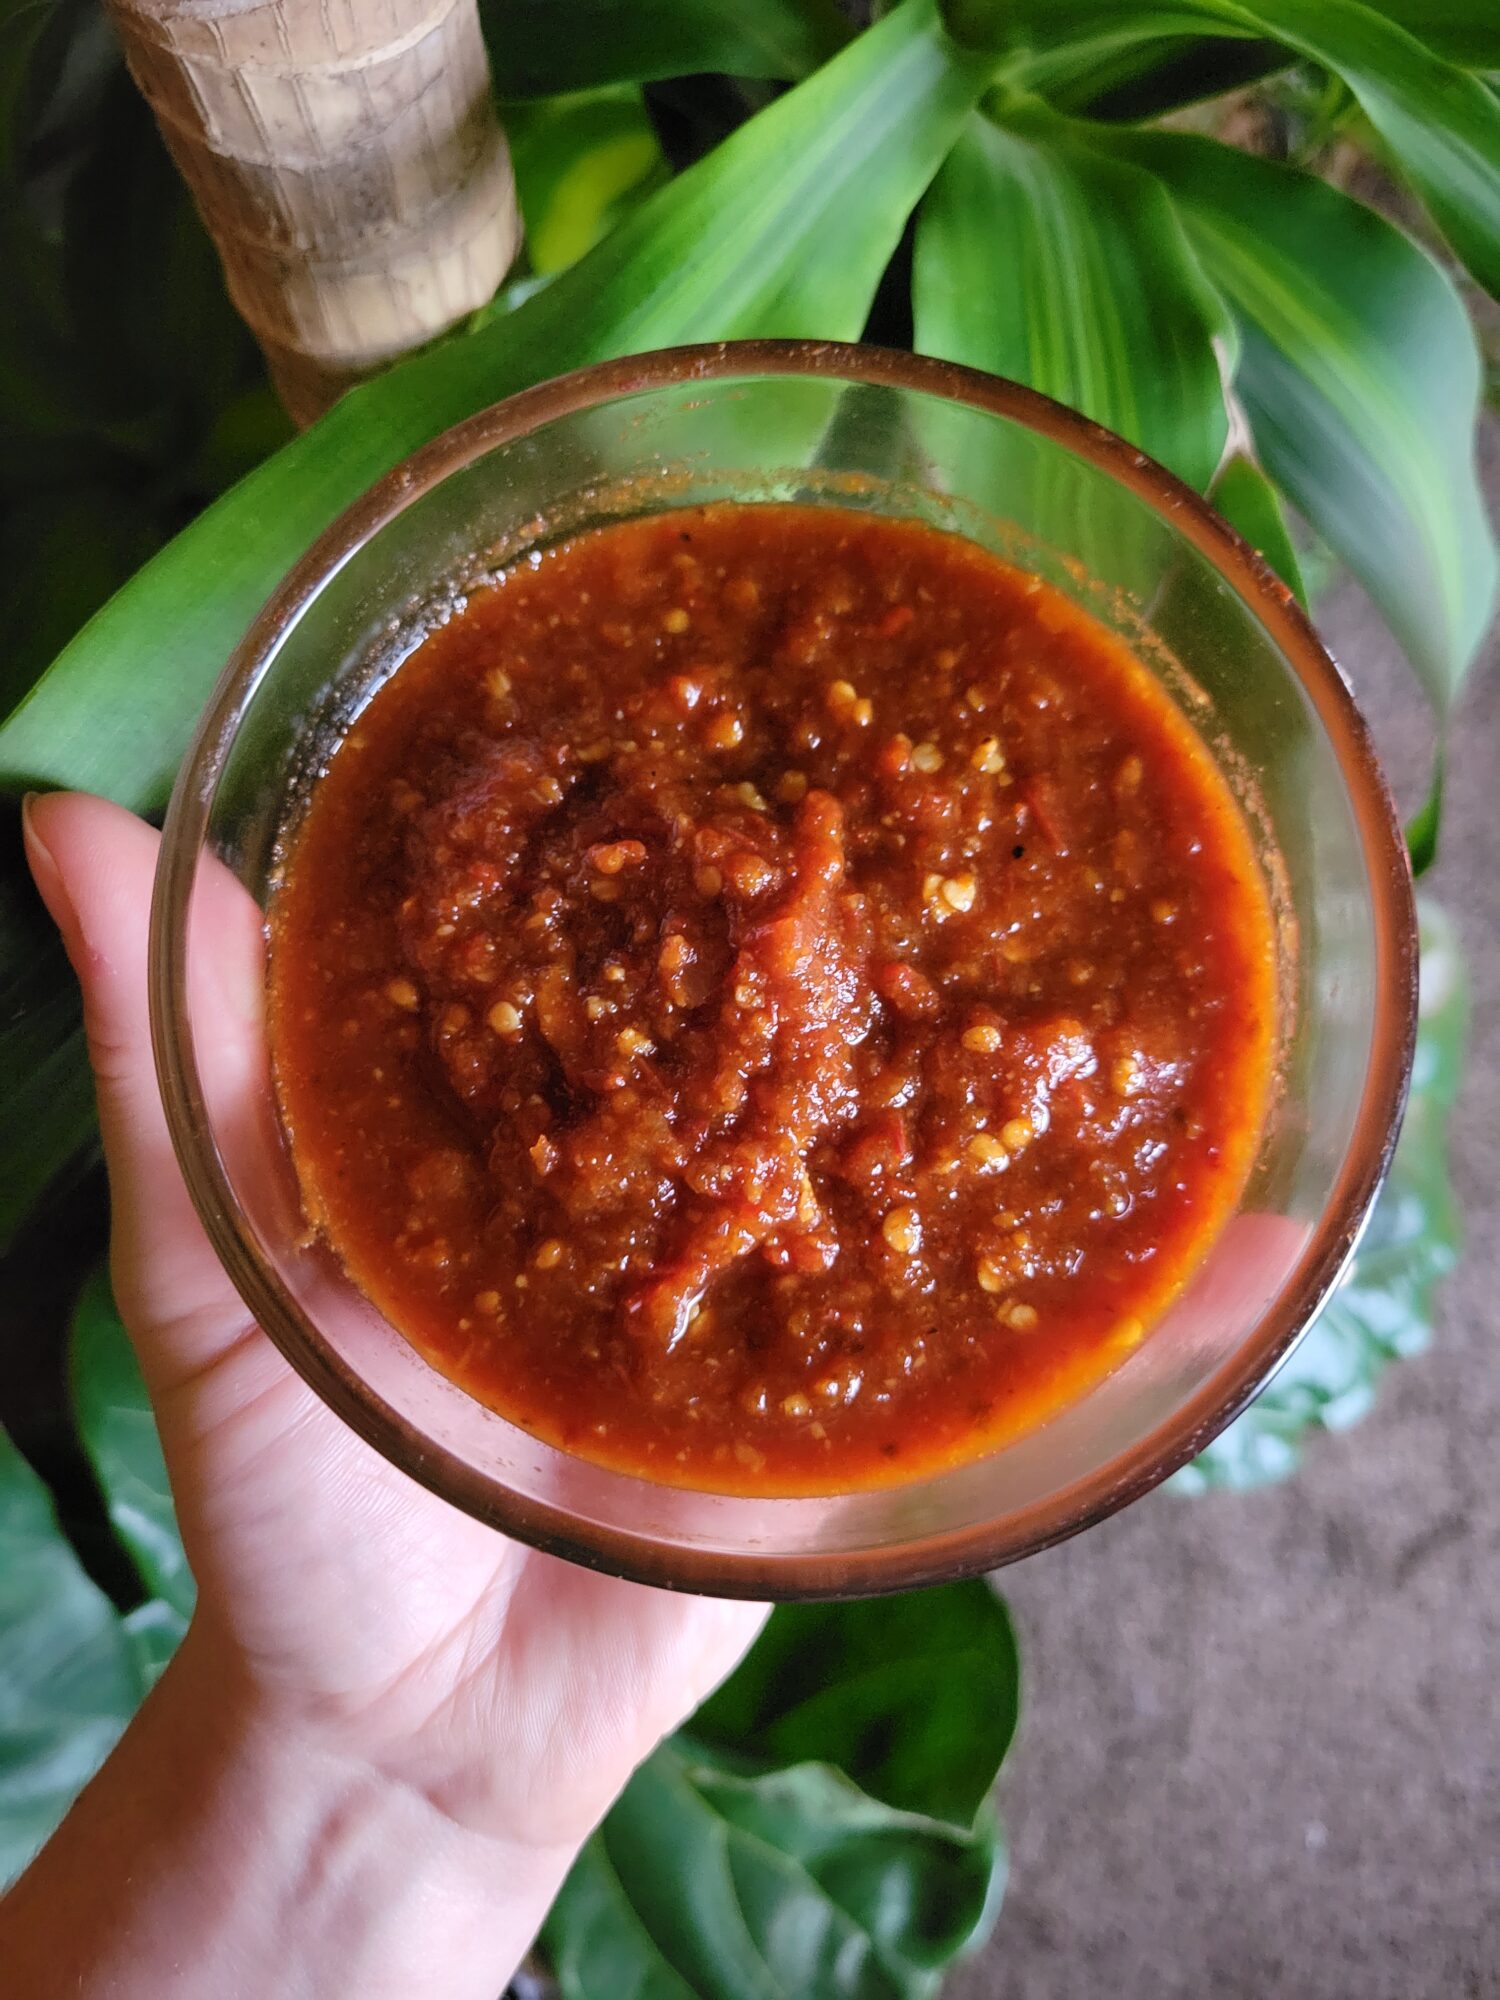 Enchilada Sauce w/ Thai Chilis & Cherry Tomatoes